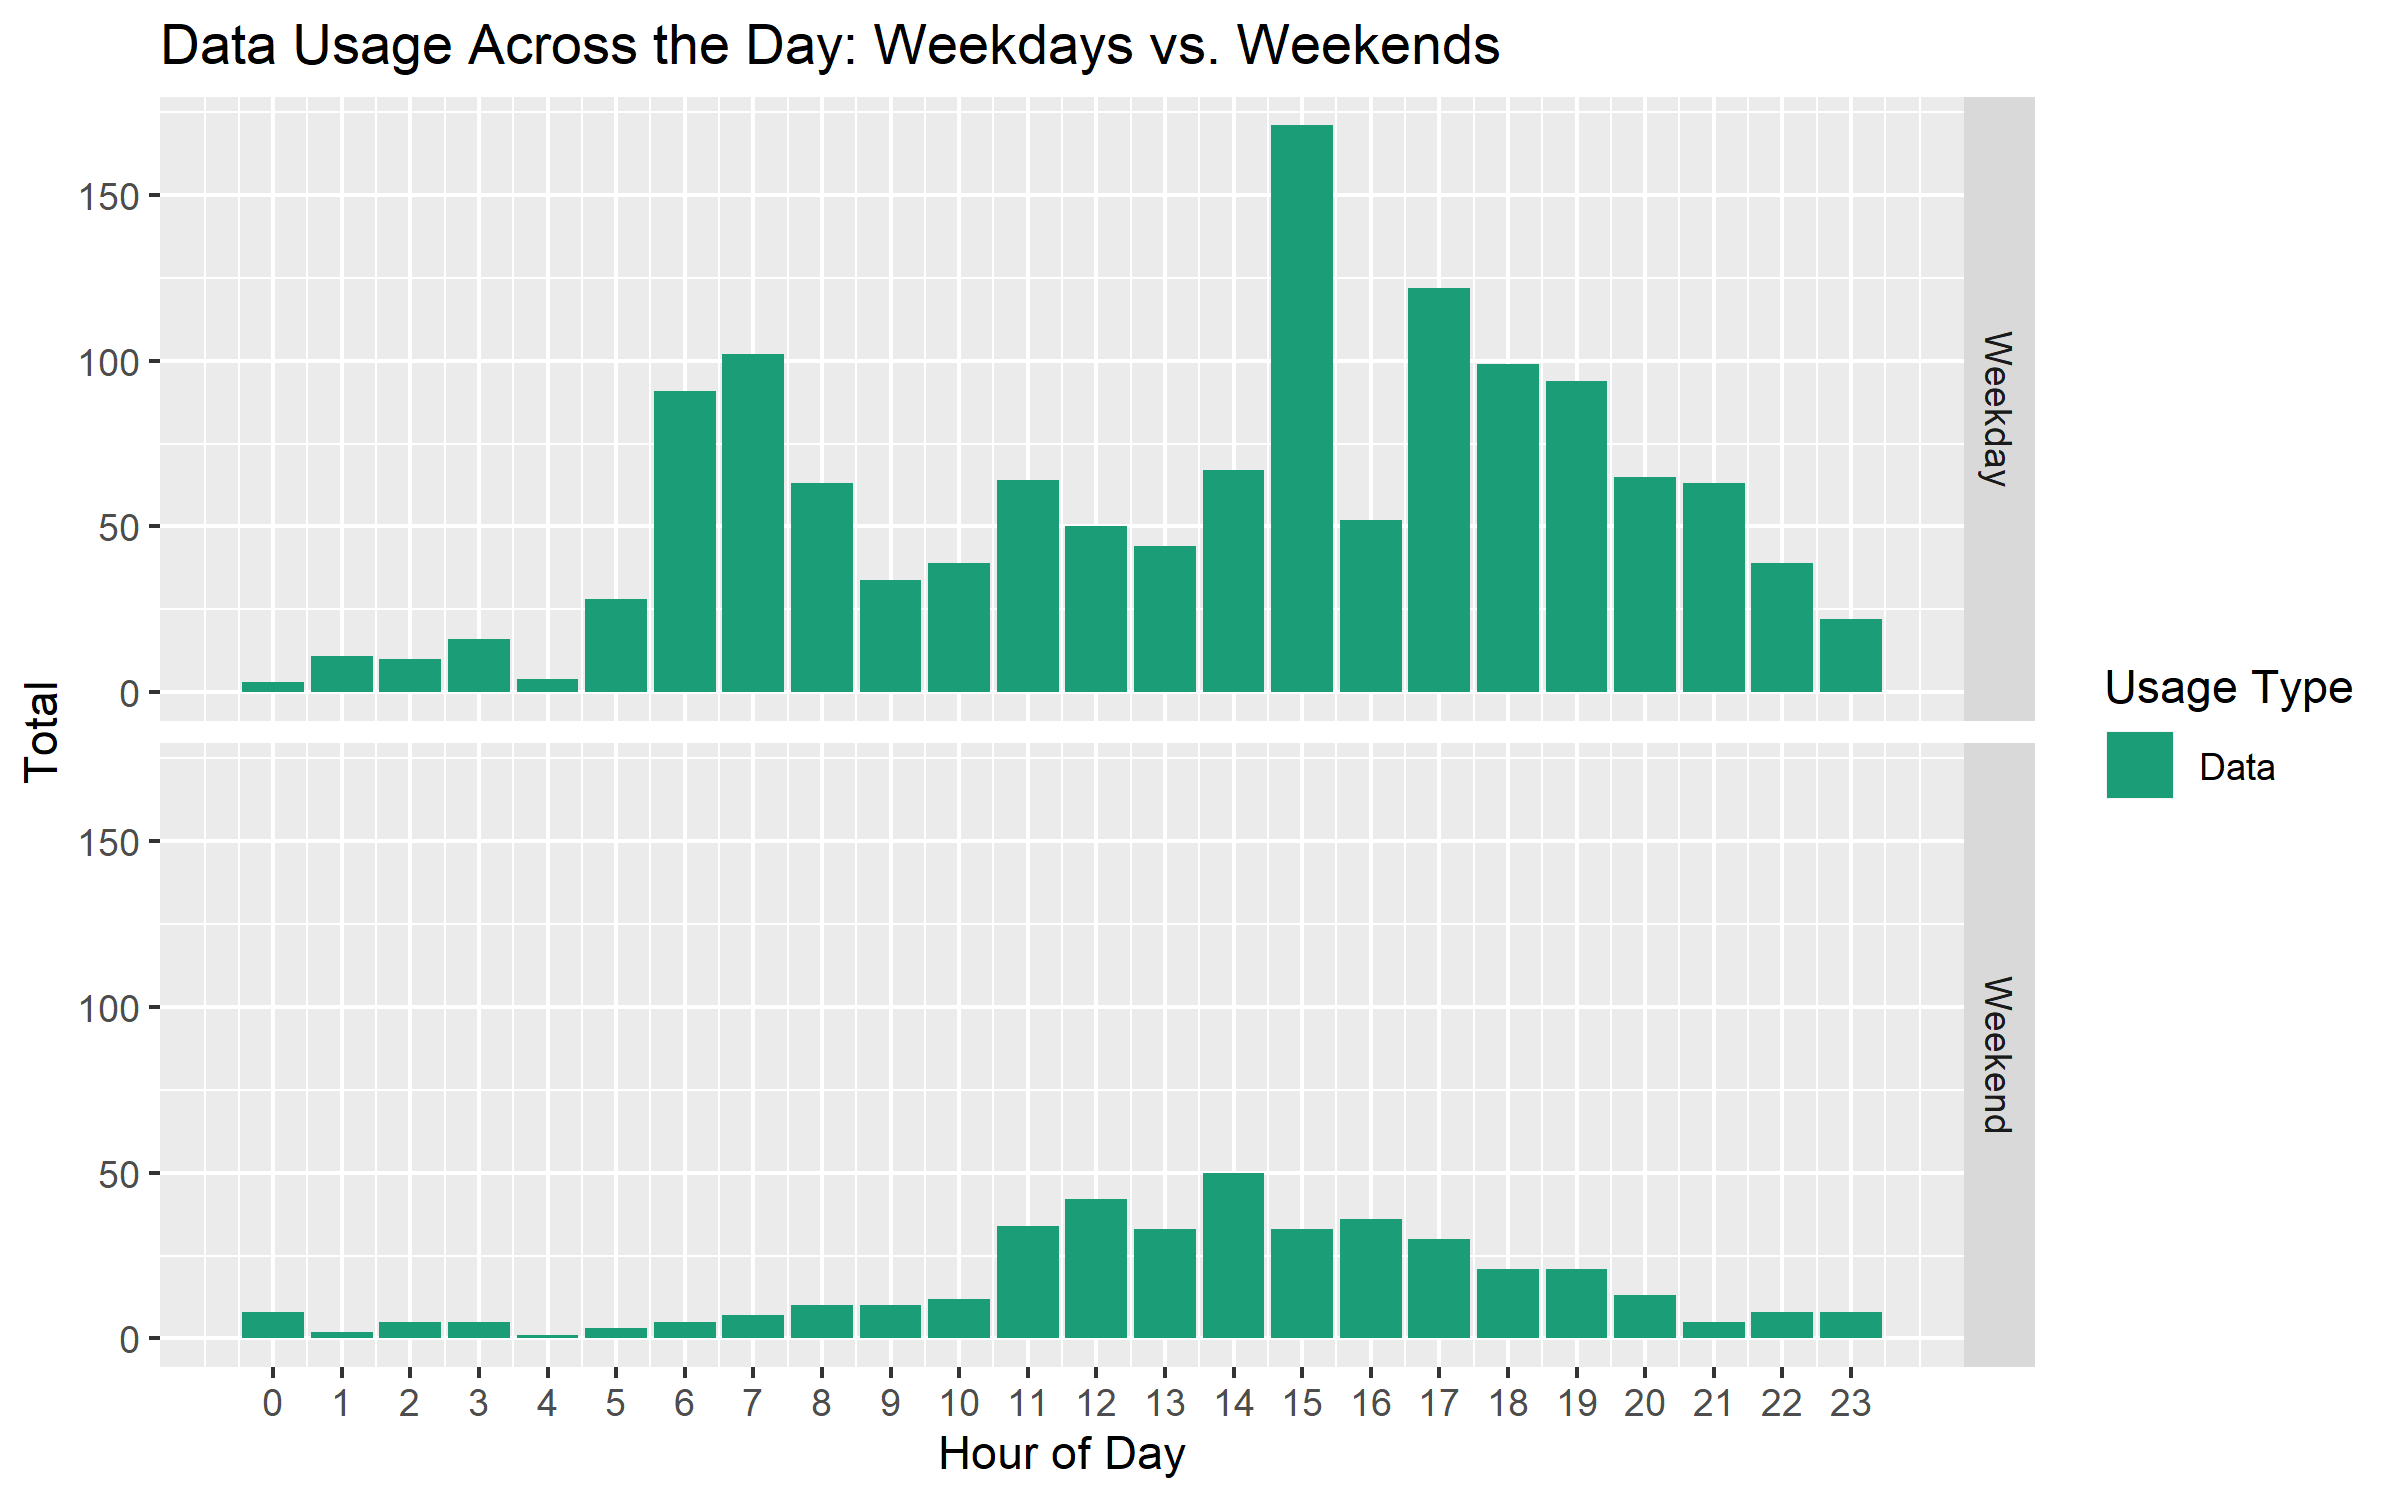 weekday vs. weekend: data